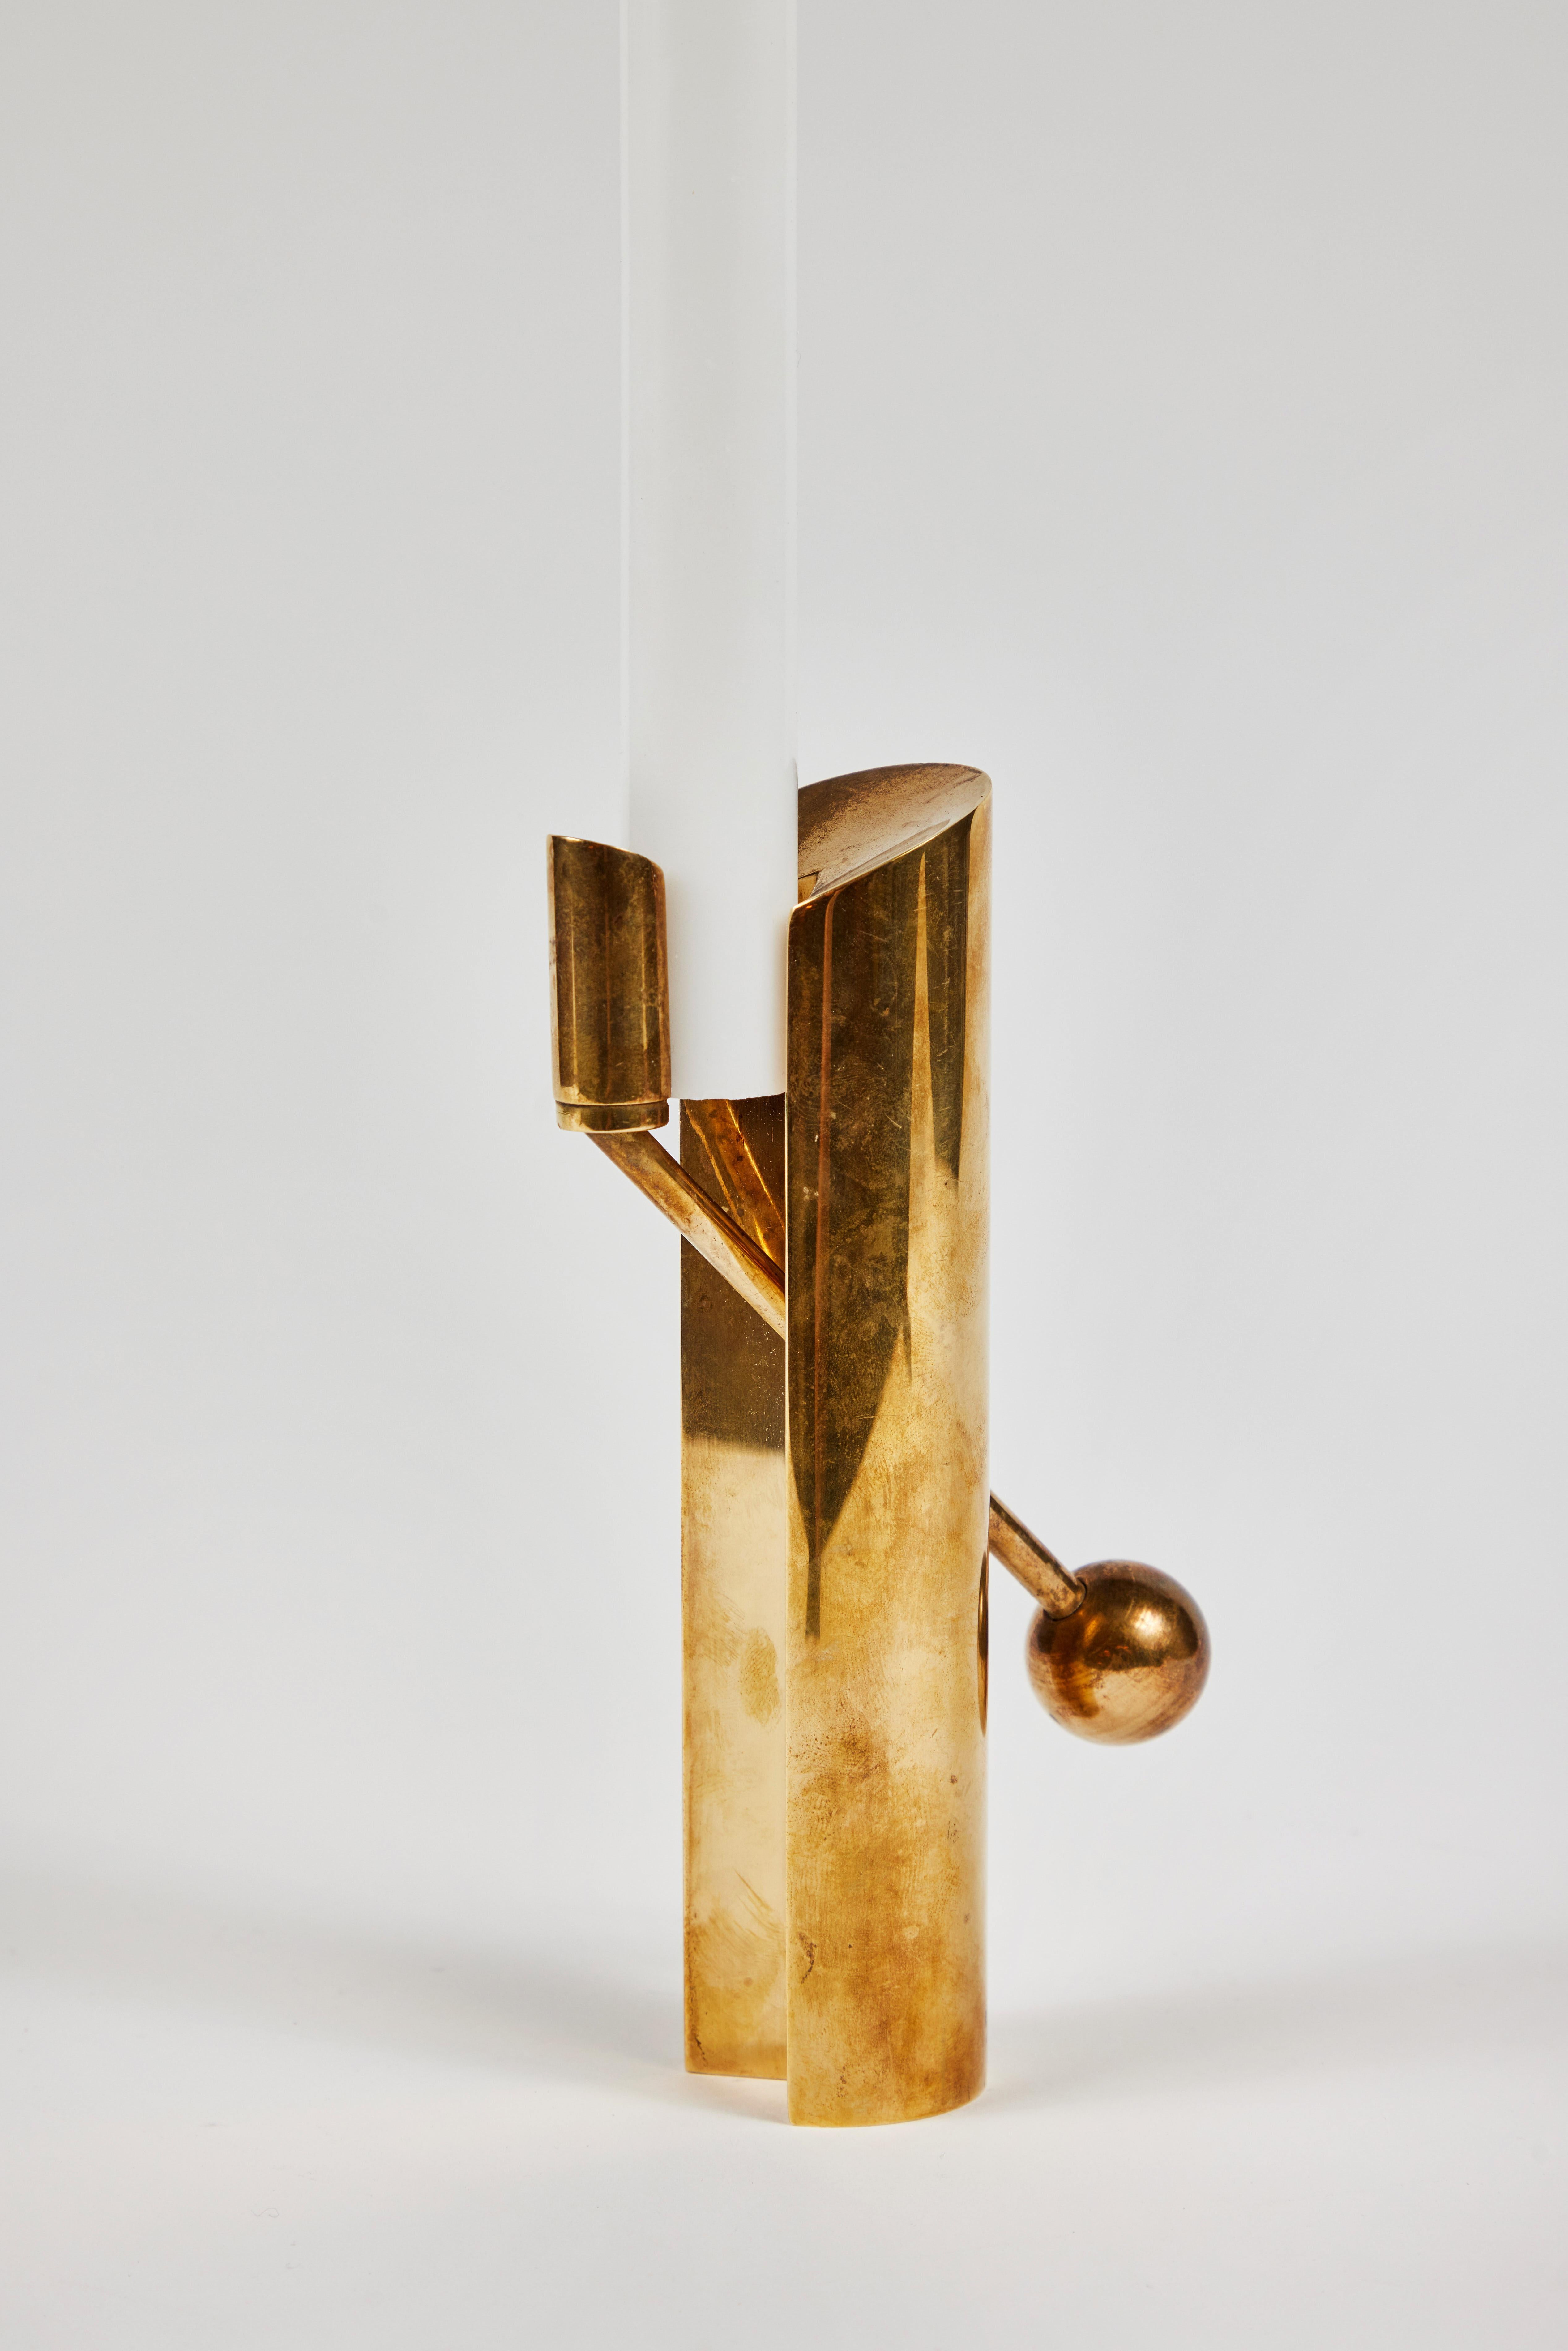 1950er Jahre Pierre Forsell Modell #1607 Messing Kerzenhalter für Skultuna. 

Dieser aus massivem Messing gefertigte, äußerst raffinierte und vielseitige skulpturale Kerzenhalter wird zu Recht als eines der ikonischsten schwedischen Designs von